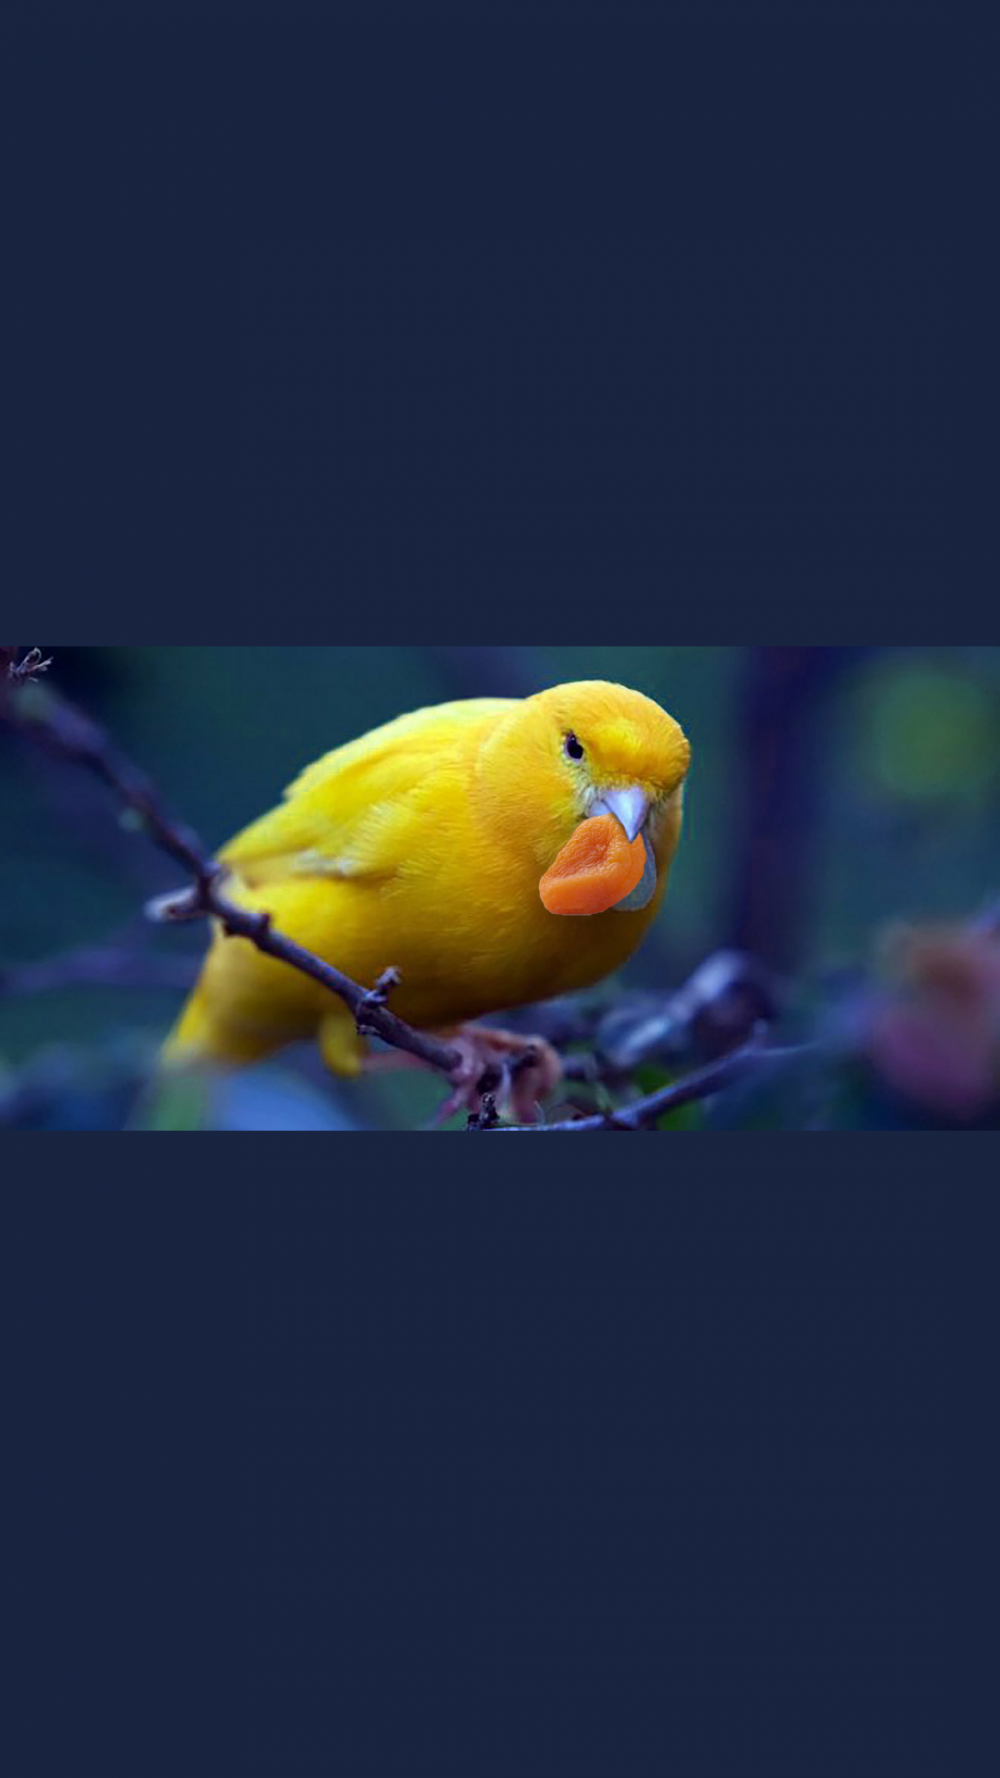 Kuşları severmisiniz